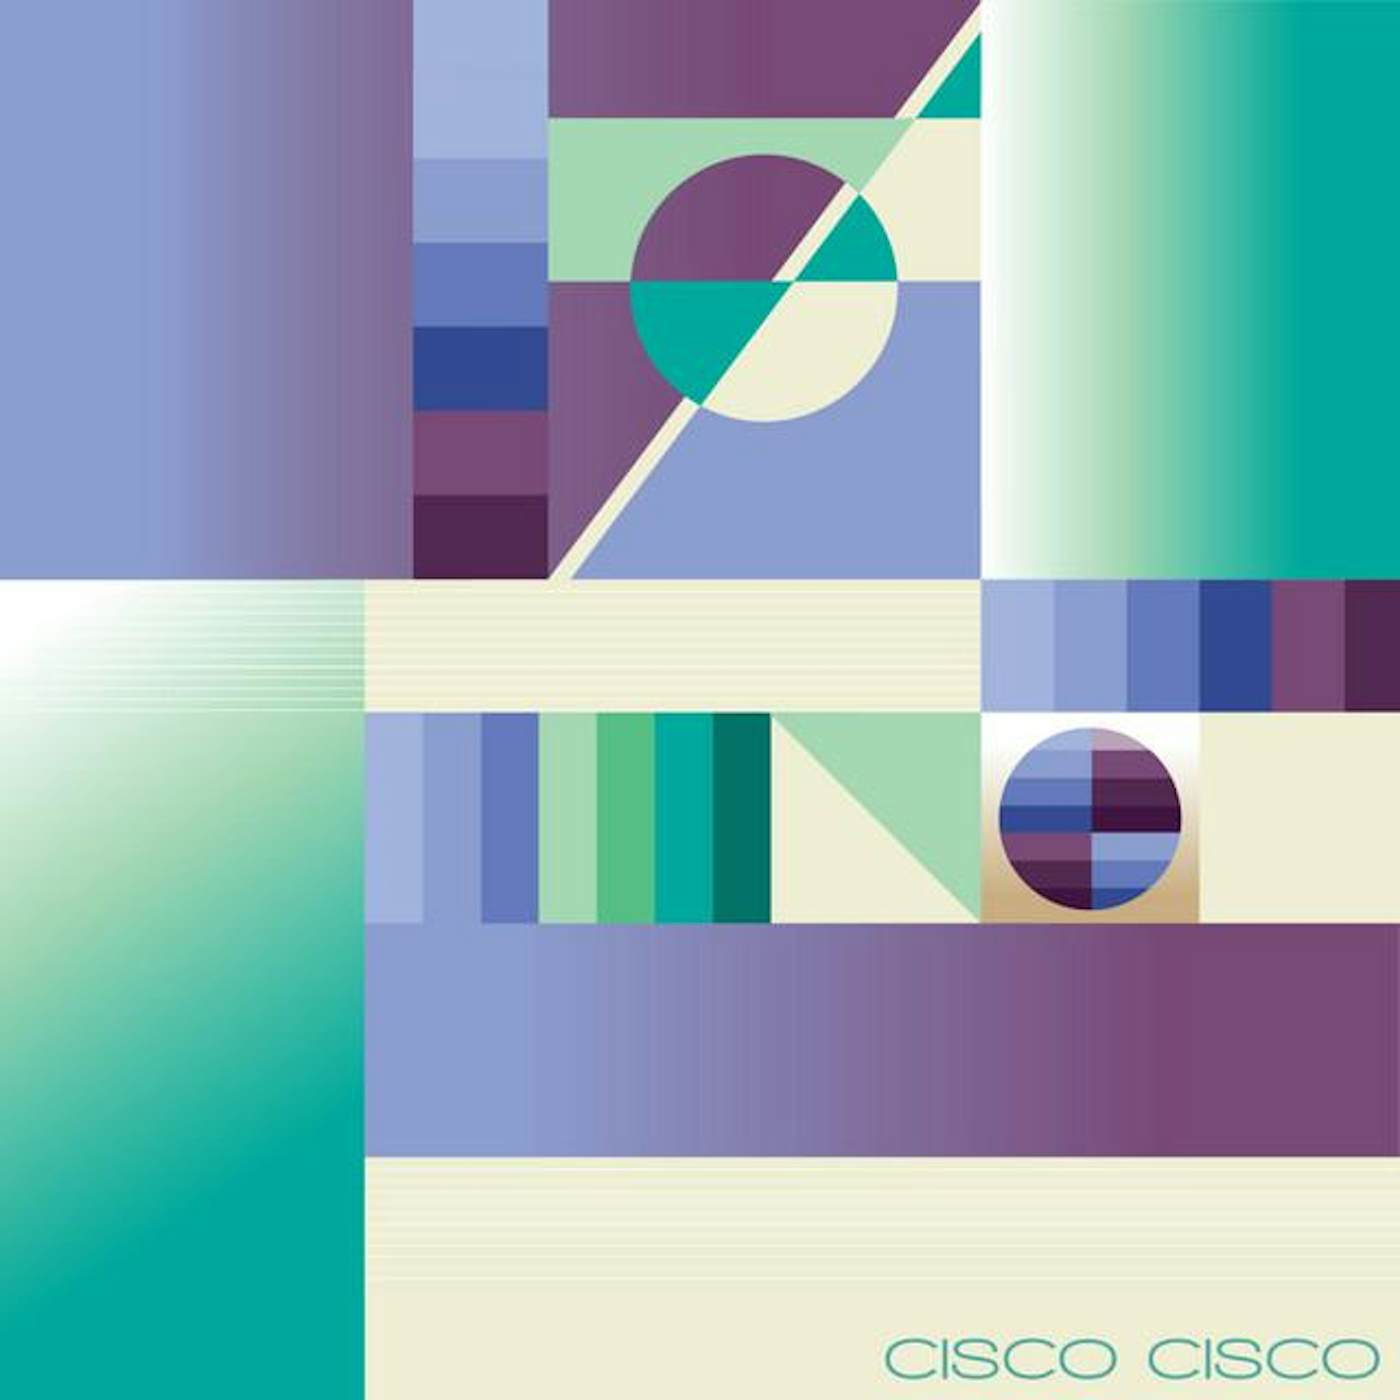 Cisco Cisco